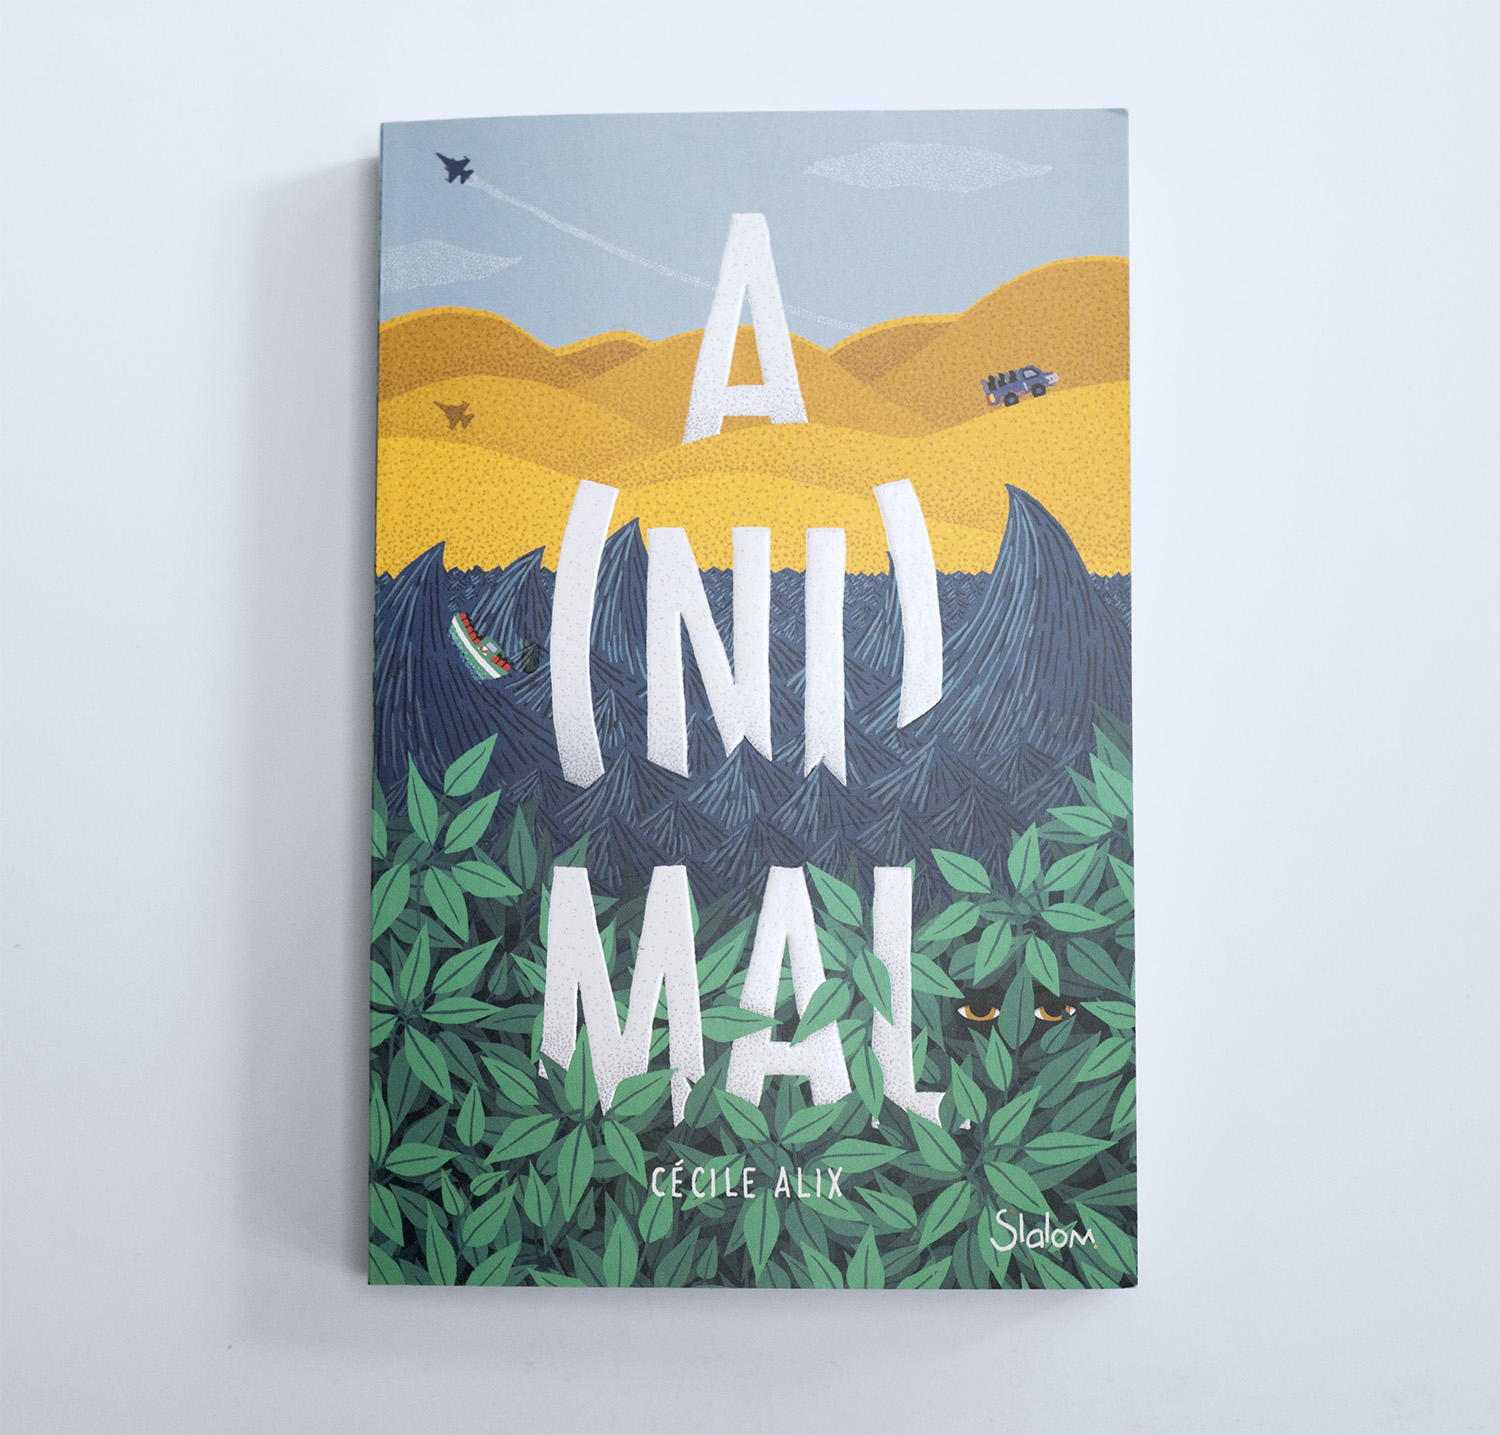 Couverture, illustration et conception graphique par Juliette Maroni pour la couverture du roman ado A(ni)mal écrit par Cécile Alix aux éditions Slalom.